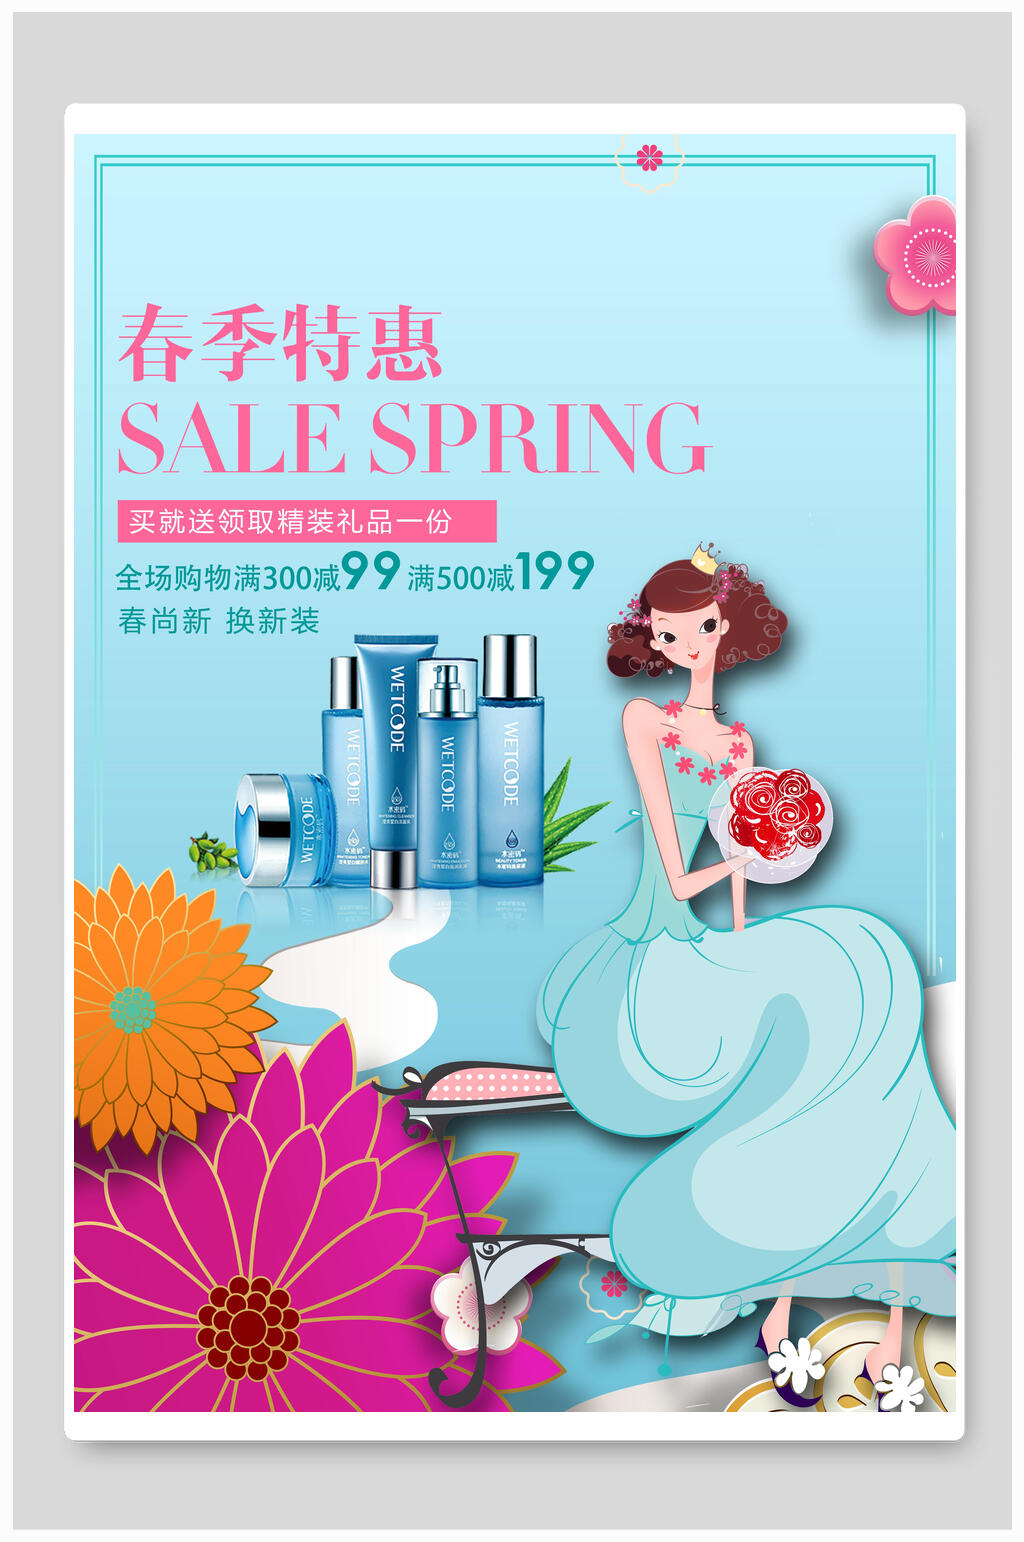 春季特惠化妆品促销海报模板下载